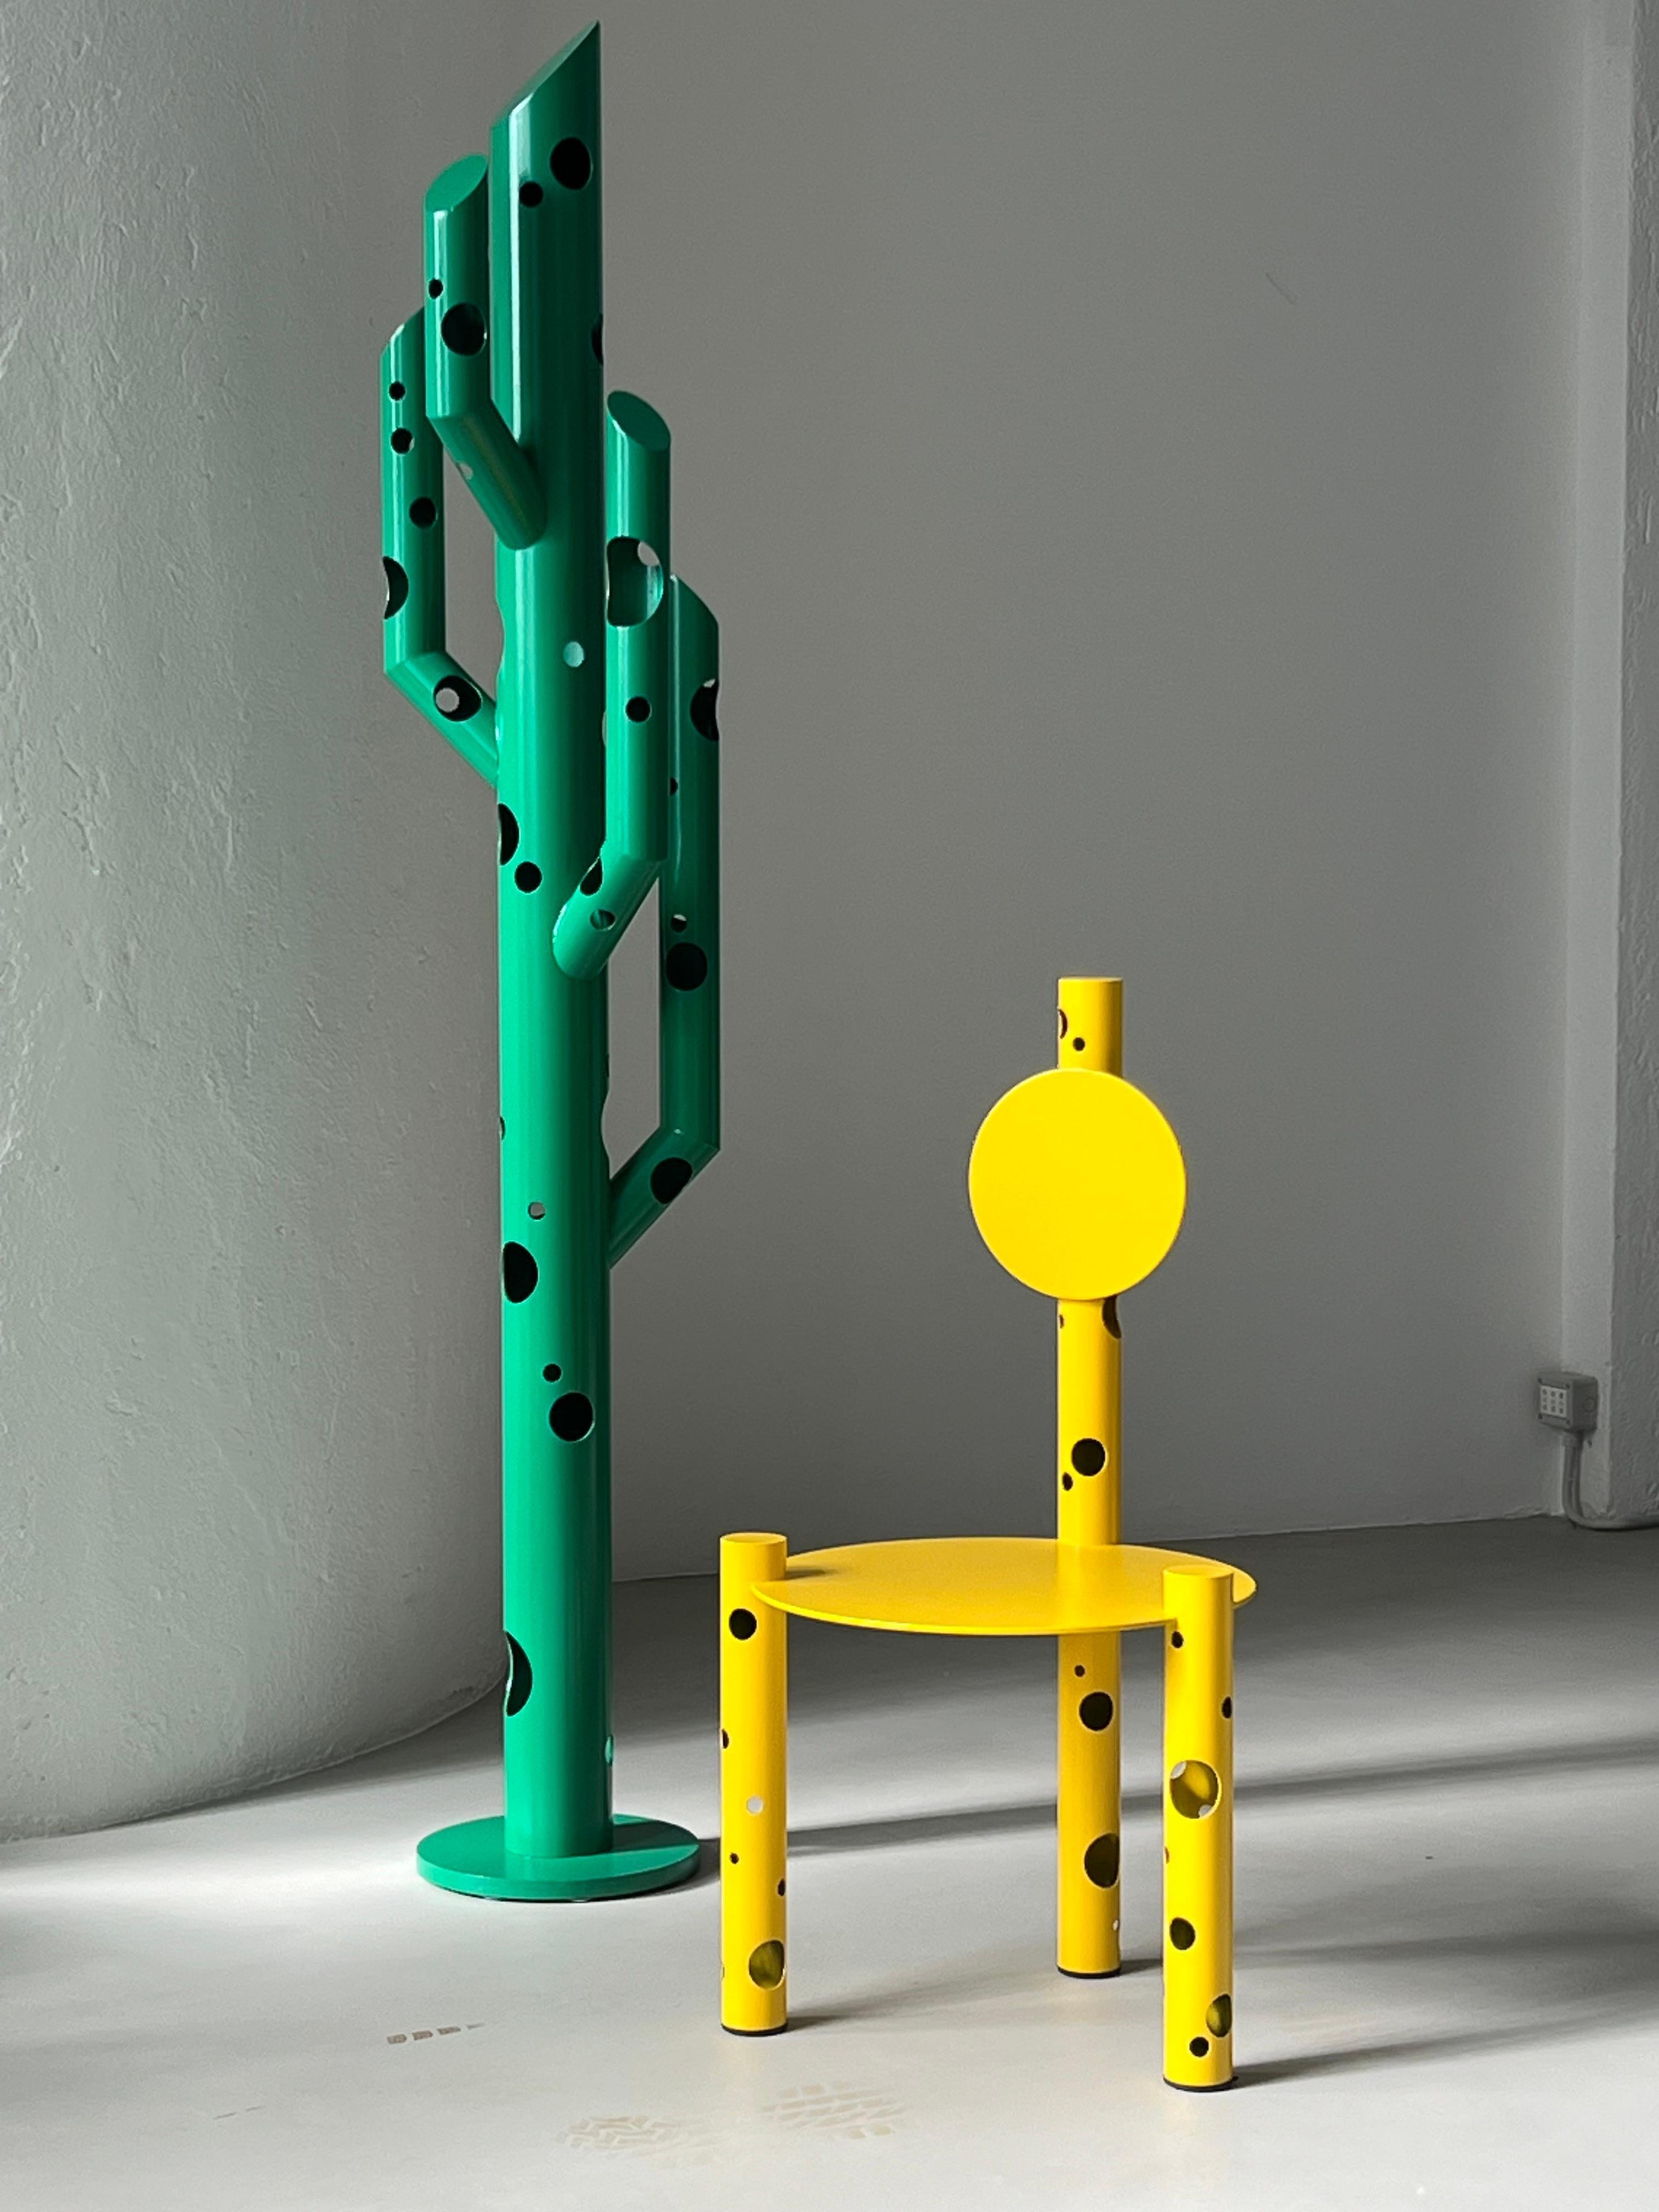 Skulpturaler Esszimmerstuhl - zeitgenössischer Sammlerstuhl - Metallstuhl mit Löchern

Der im Jahr 2024 entworfene und anlässlich der Mailänder Designwoche vorgestellte Stuhl ist die neueste Ergänzung der Silös-Kollektion von Spinzi. Das skulpturale